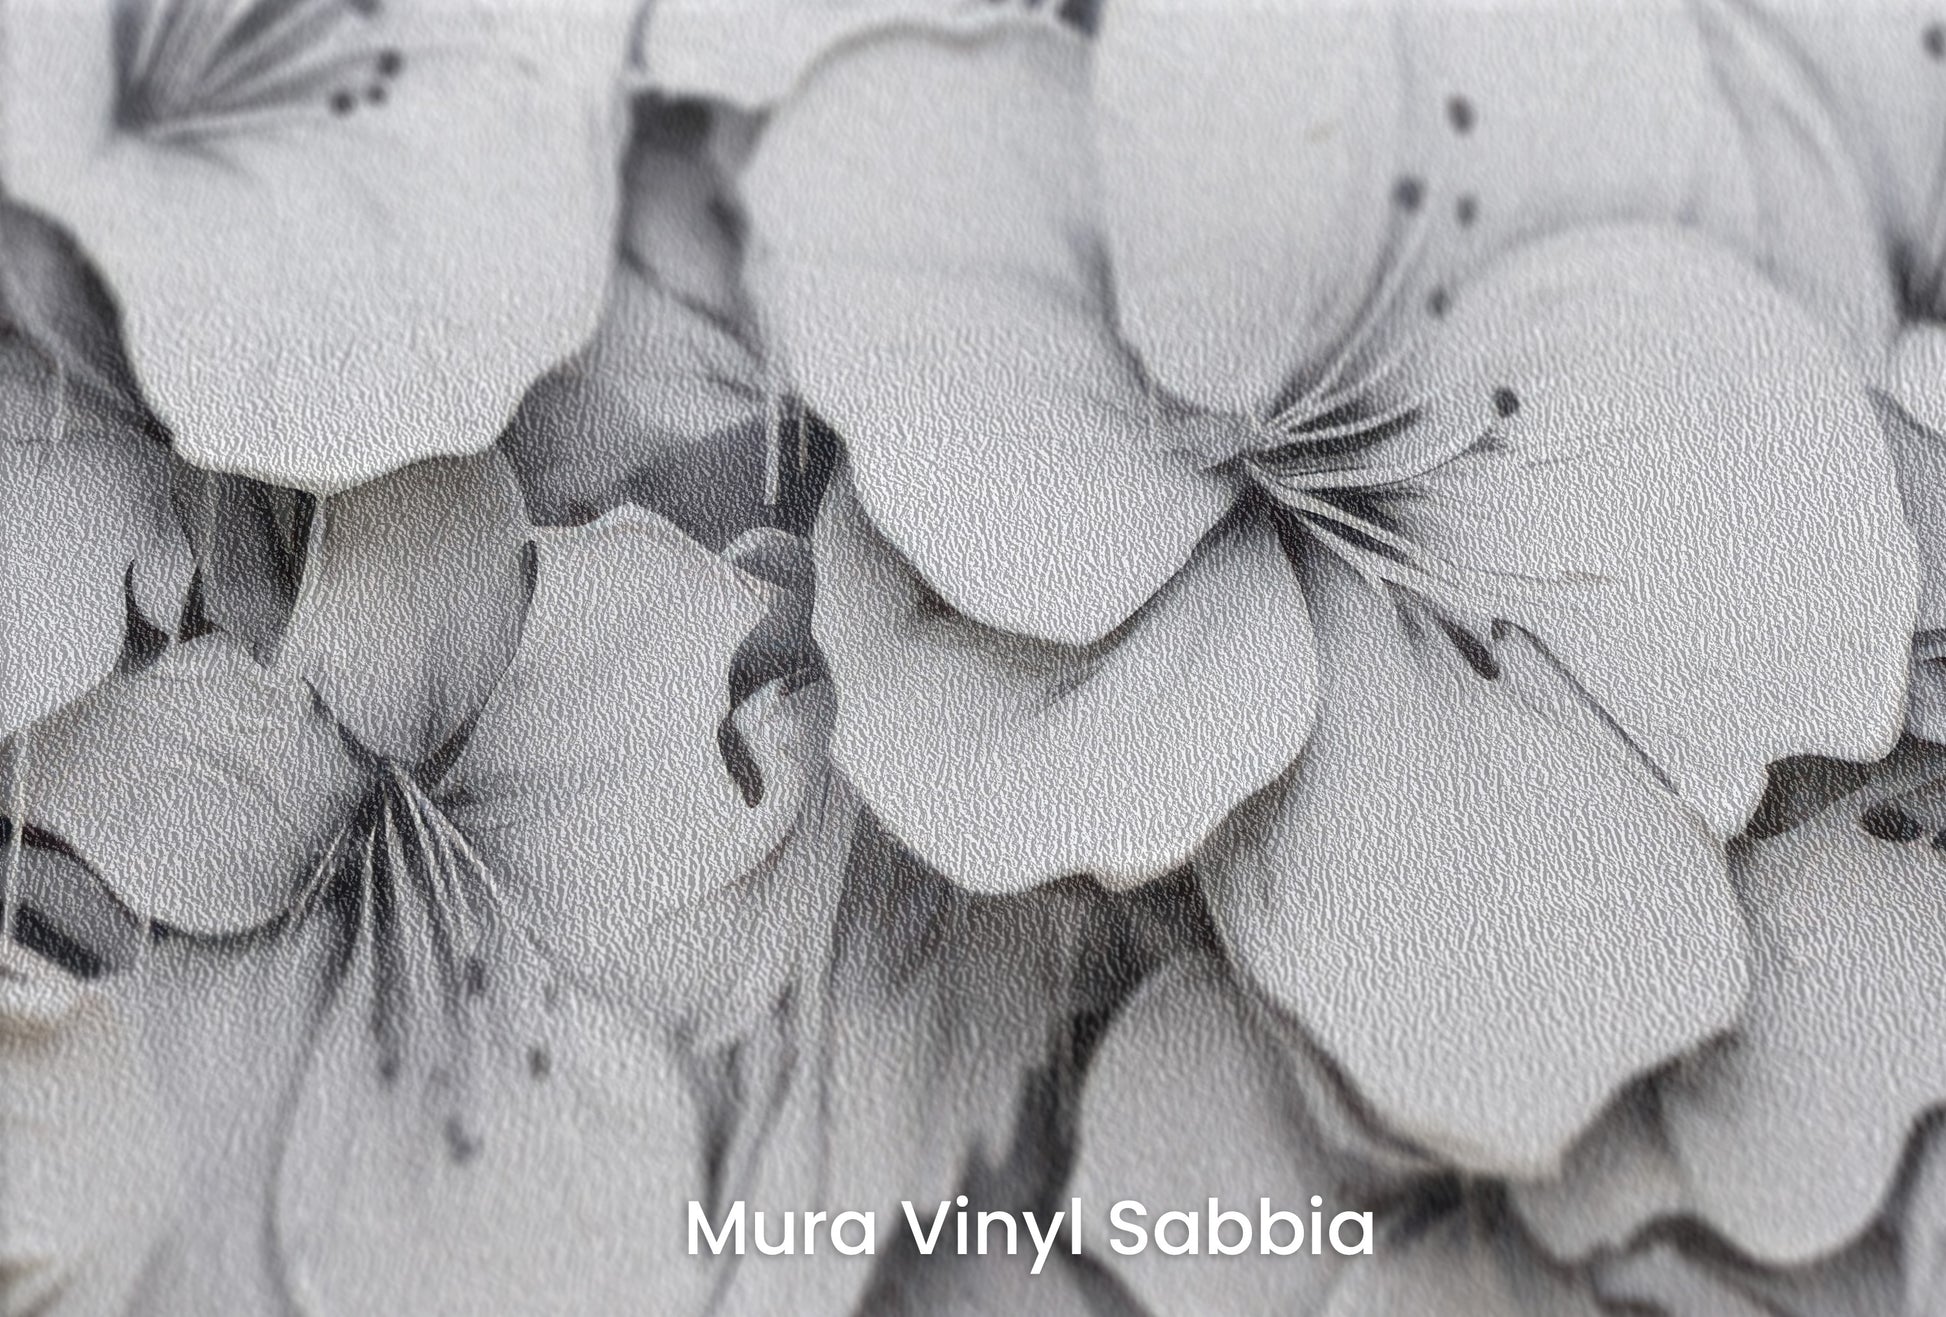 Zbliżenie na artystyczną fototapetę o nazwie CASCADE OF WHITES na podłożu Mura Vinyl Sabbia struktura grubego ziarna piasku.